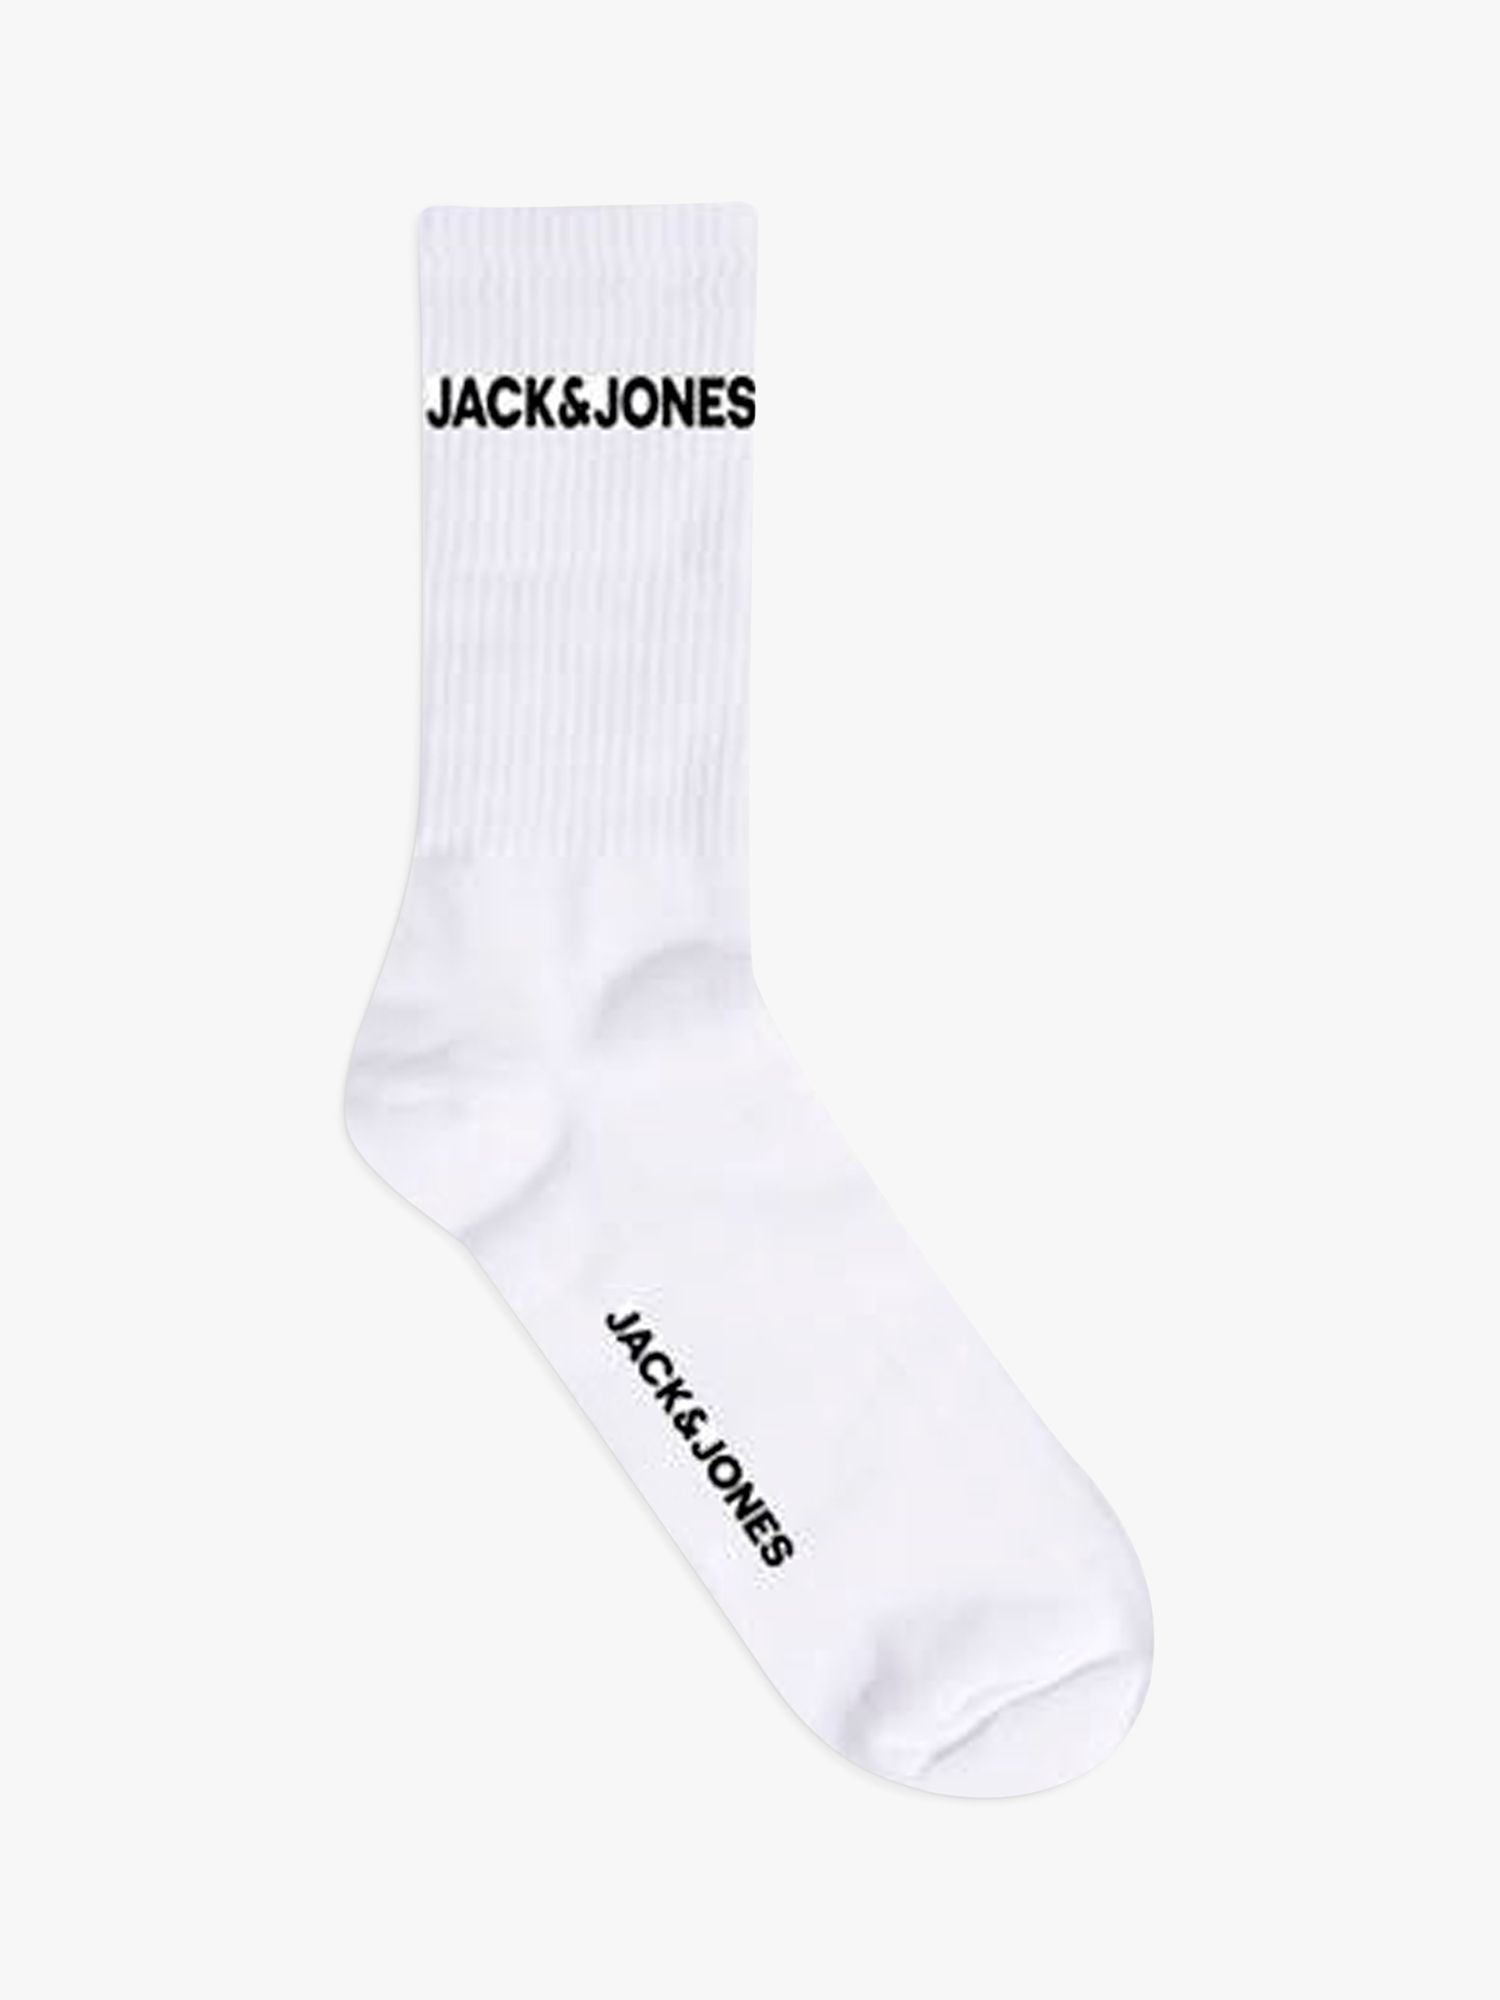 Jack & Jones Kids' Sports Socks, Pack of 5, White, S-M